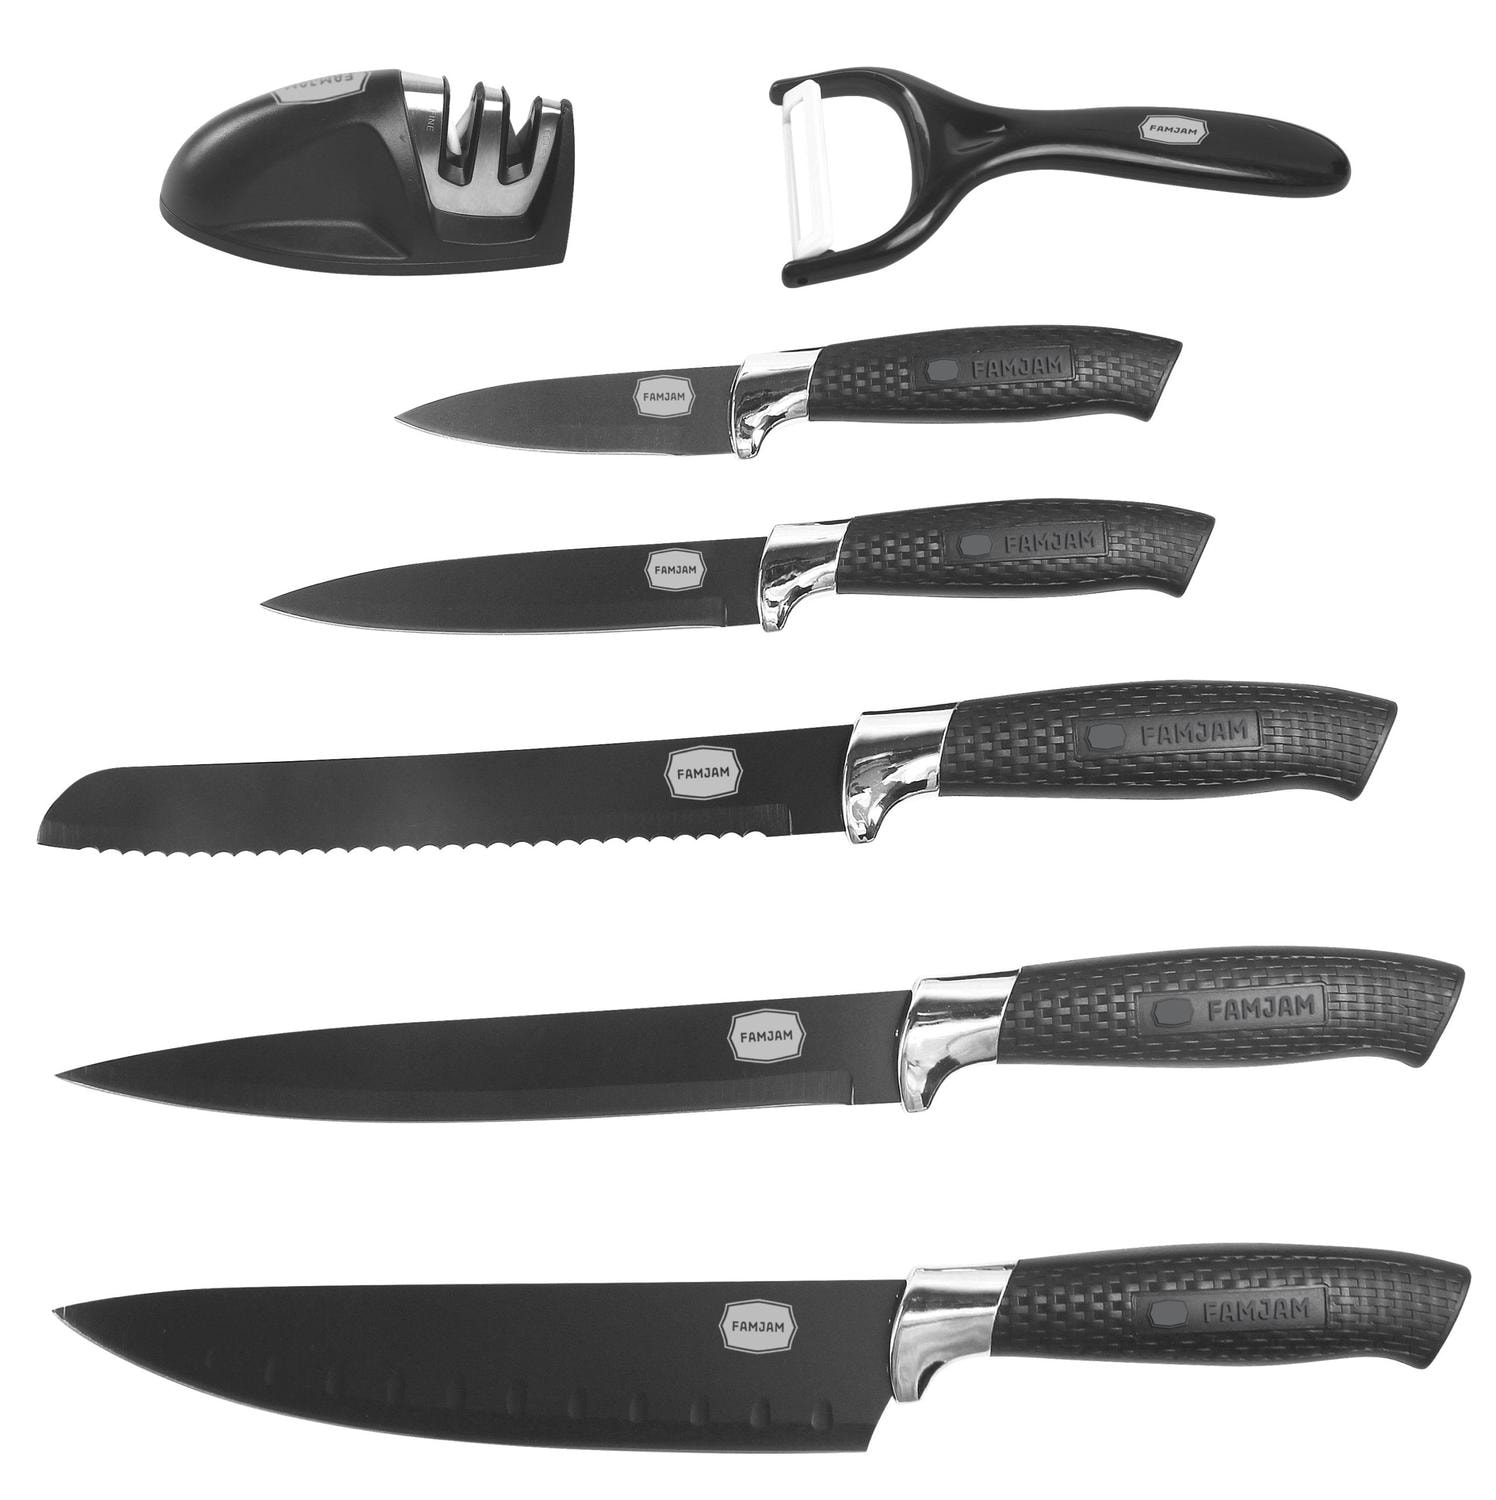 8 Delar Knivset med Ställ för Köket - Köksknivar Skalare och Knivslip Set (33 av 77)